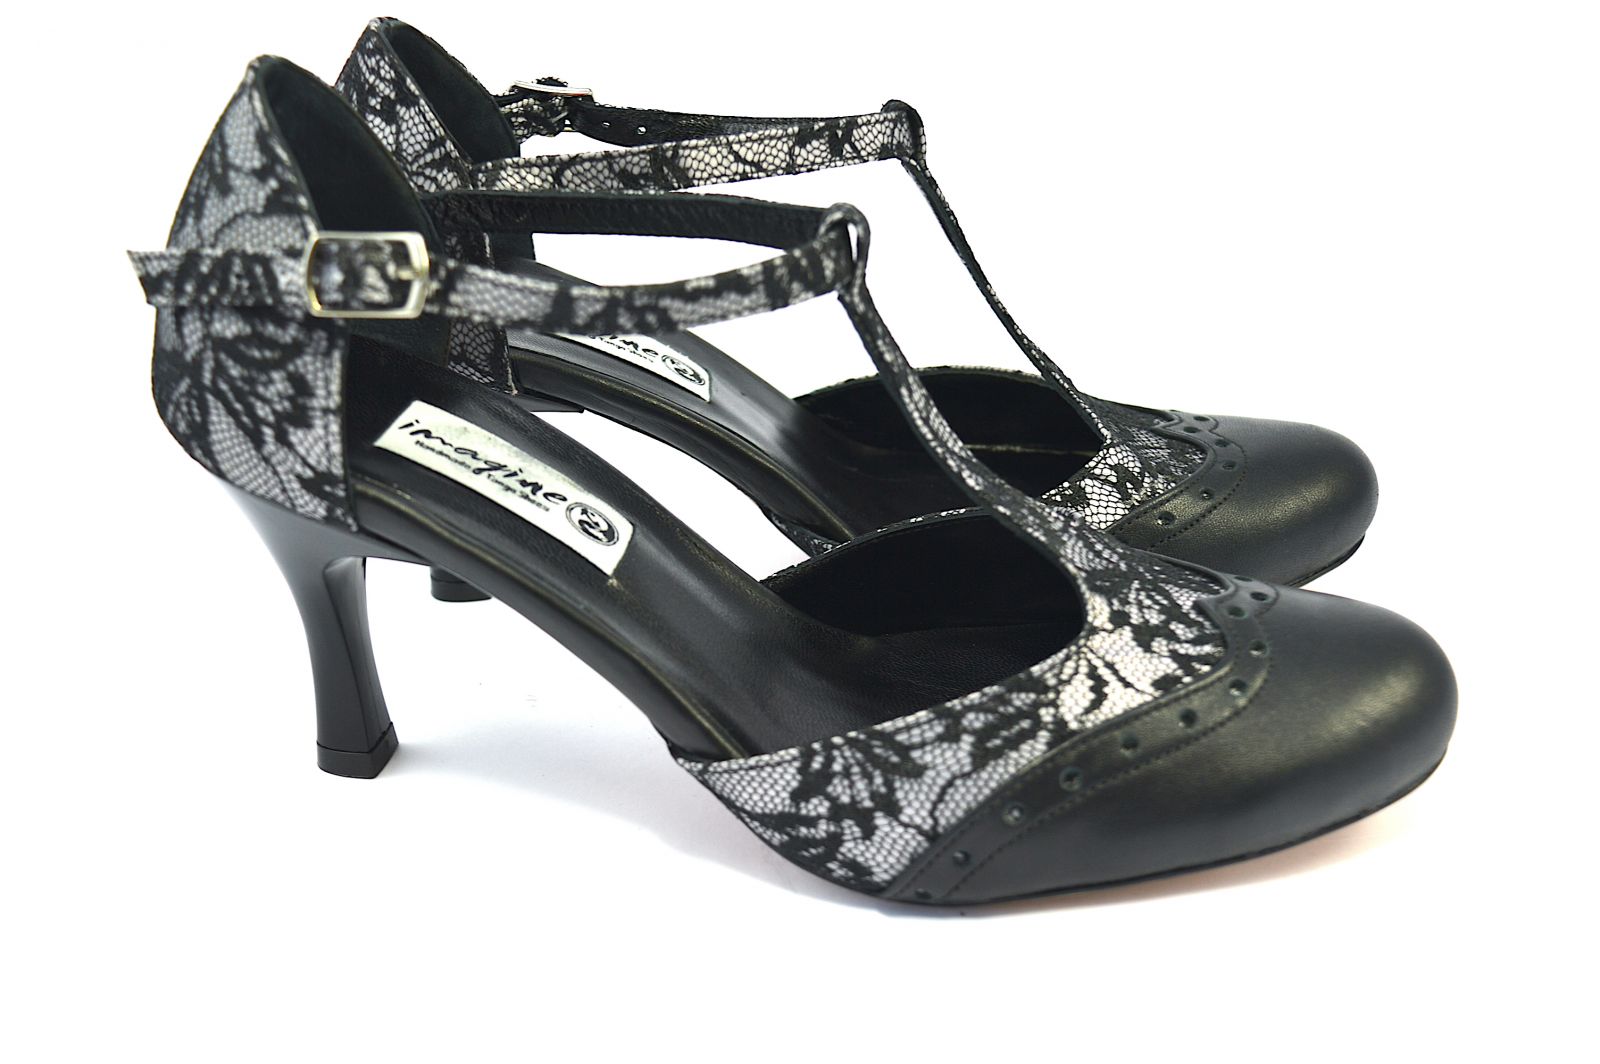 Γυναικείο παπούτσι tango closed toe από μαύρη δαντέλα και μαύρο δέρμα